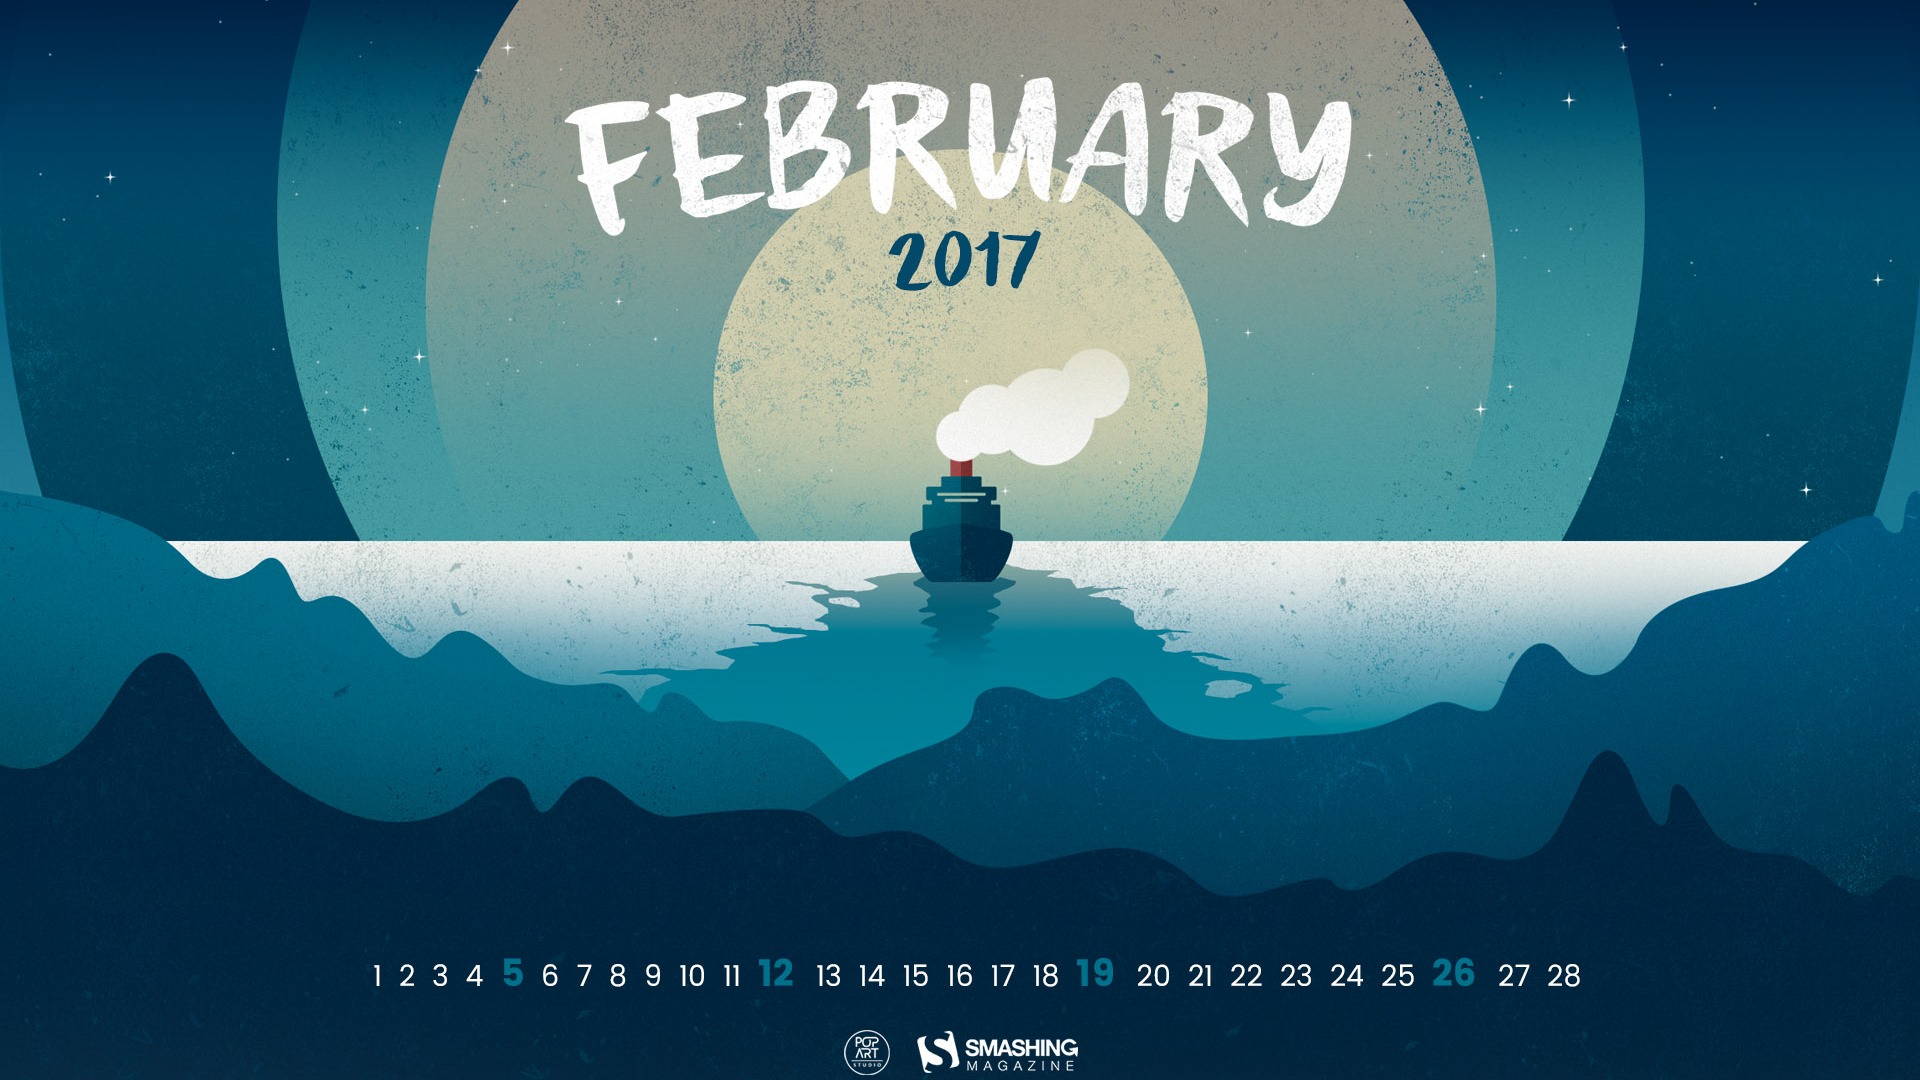 February 2017 calendar wallpaper (2) #2 - 1920x1080